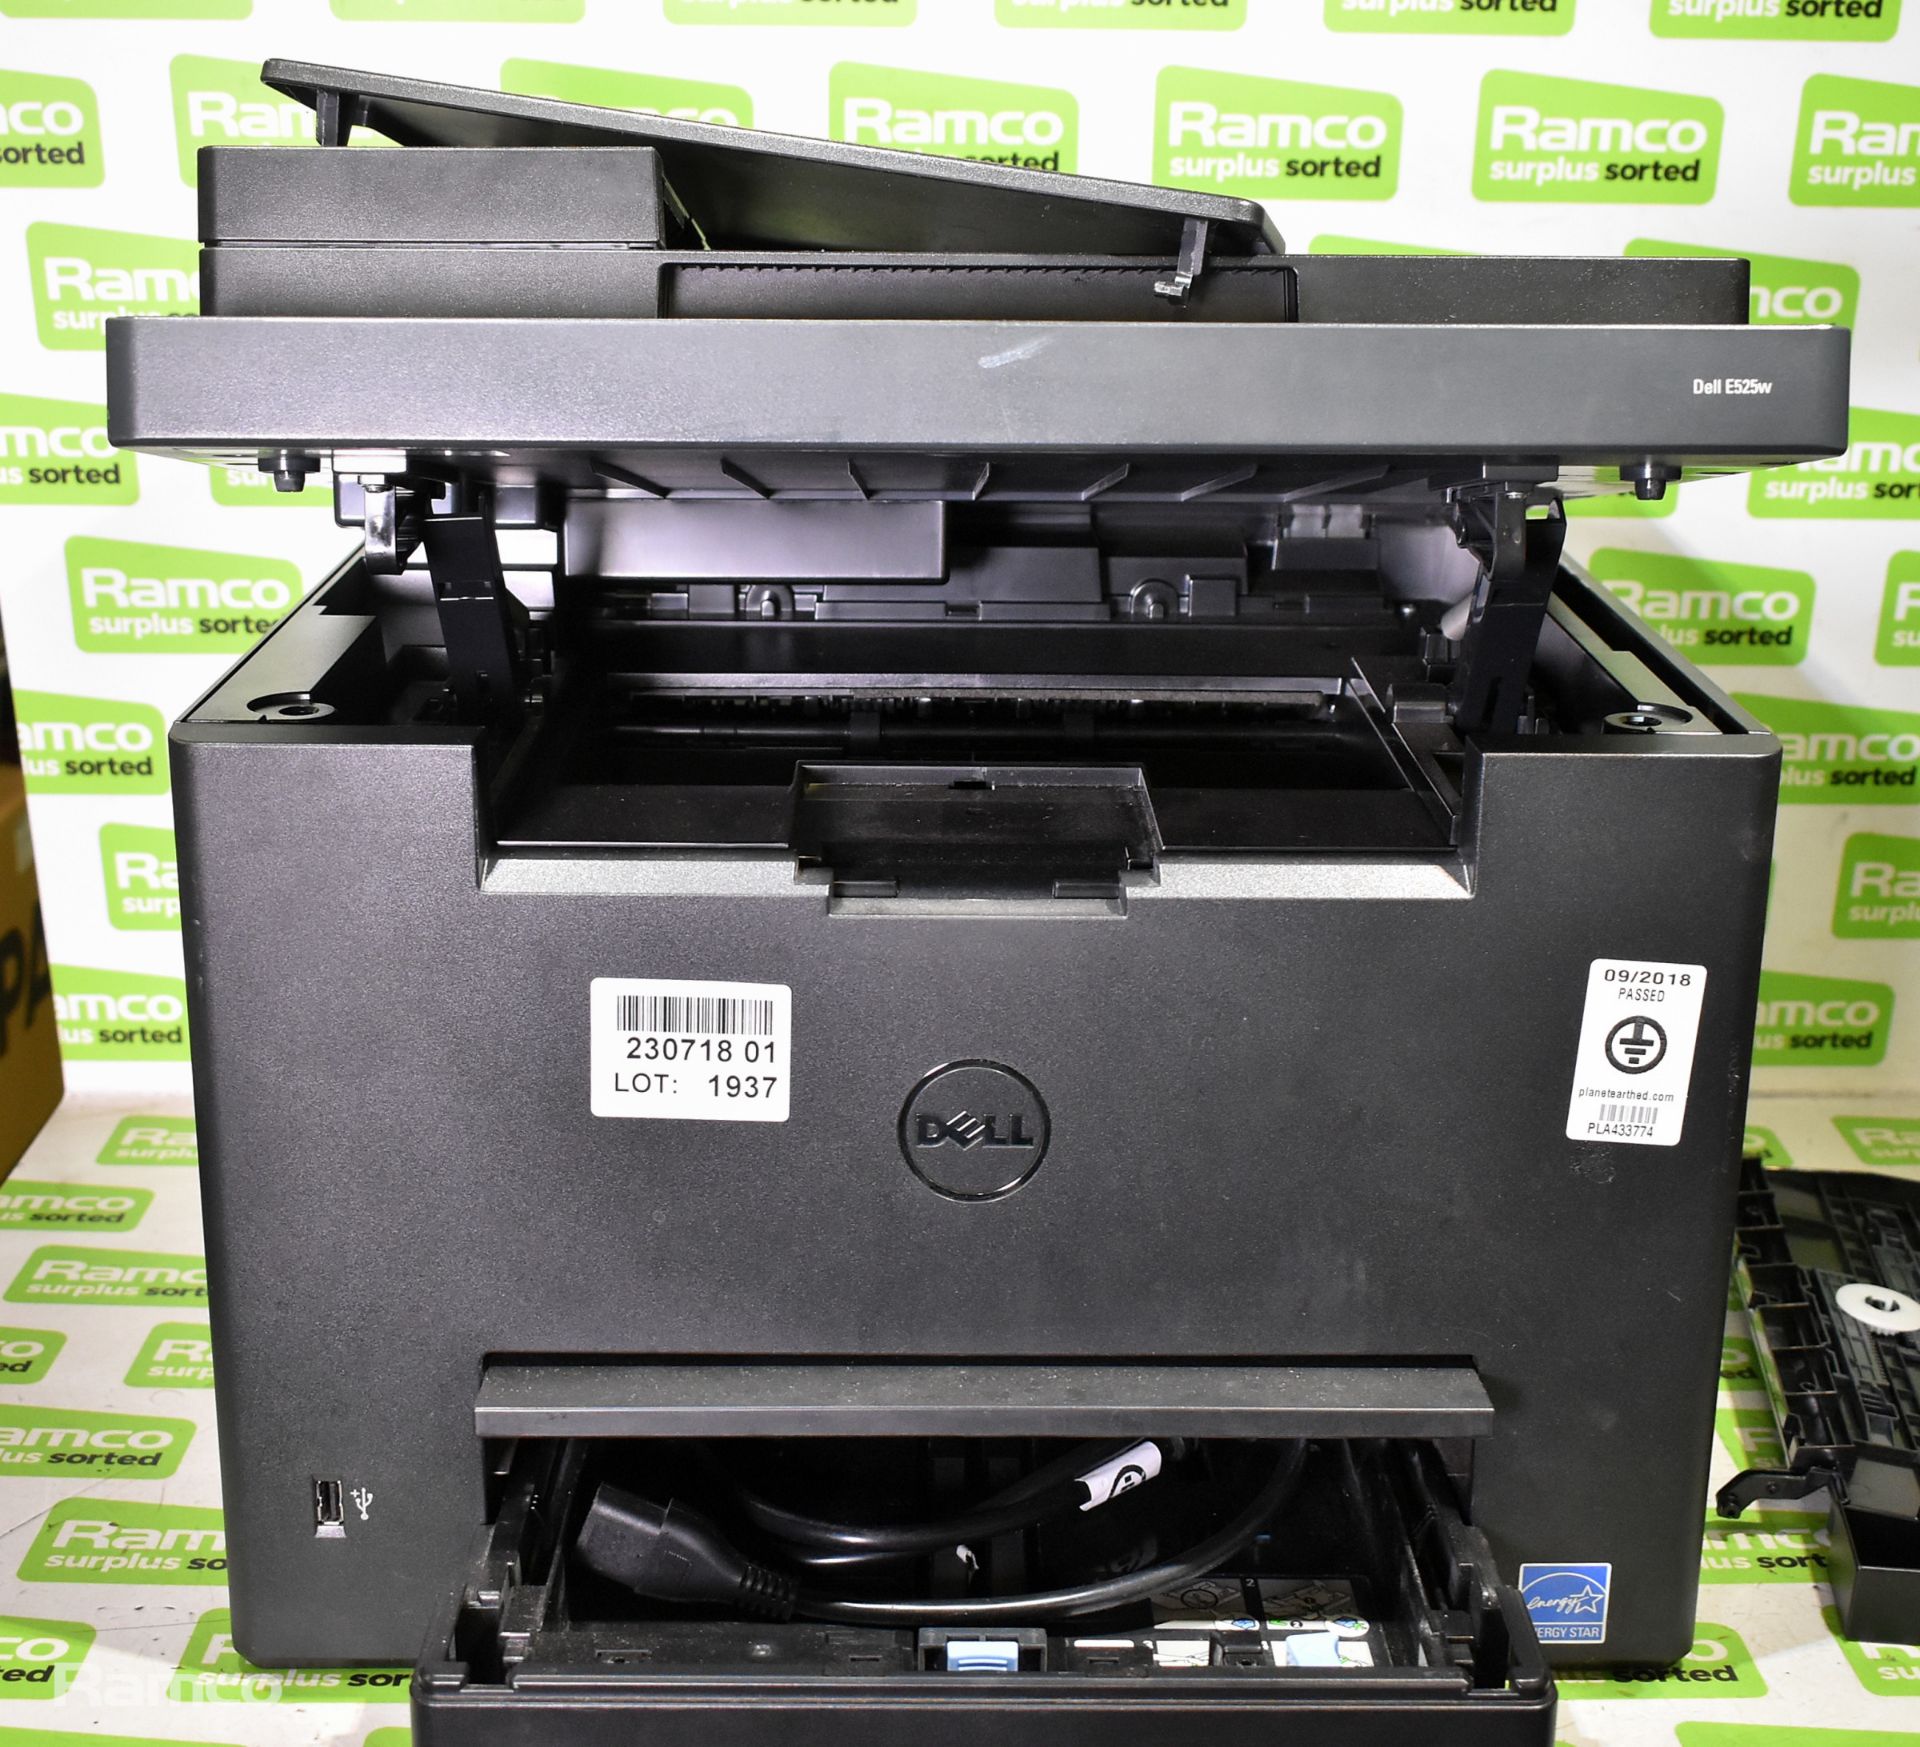 Dell E525W colour multifunction printer - Bild 3 aus 8